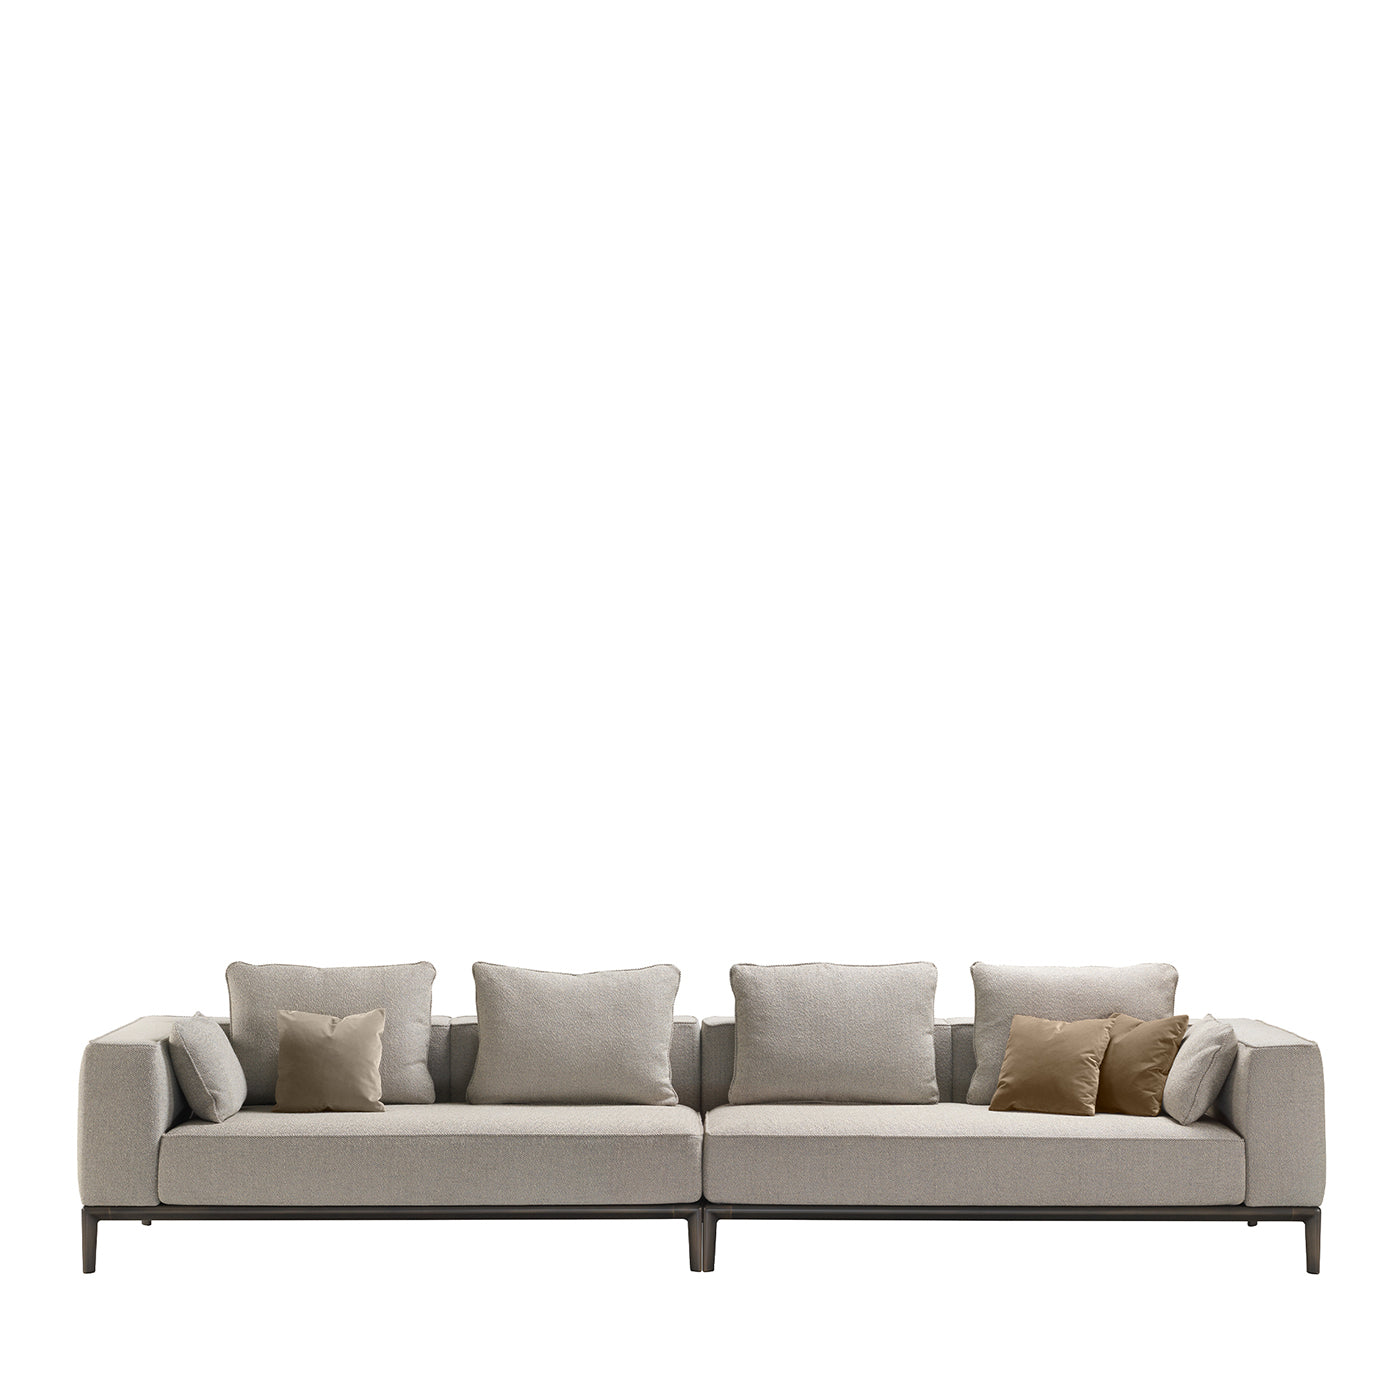 Milo Off-White Sofa by Stefano Giovannoni - Main view